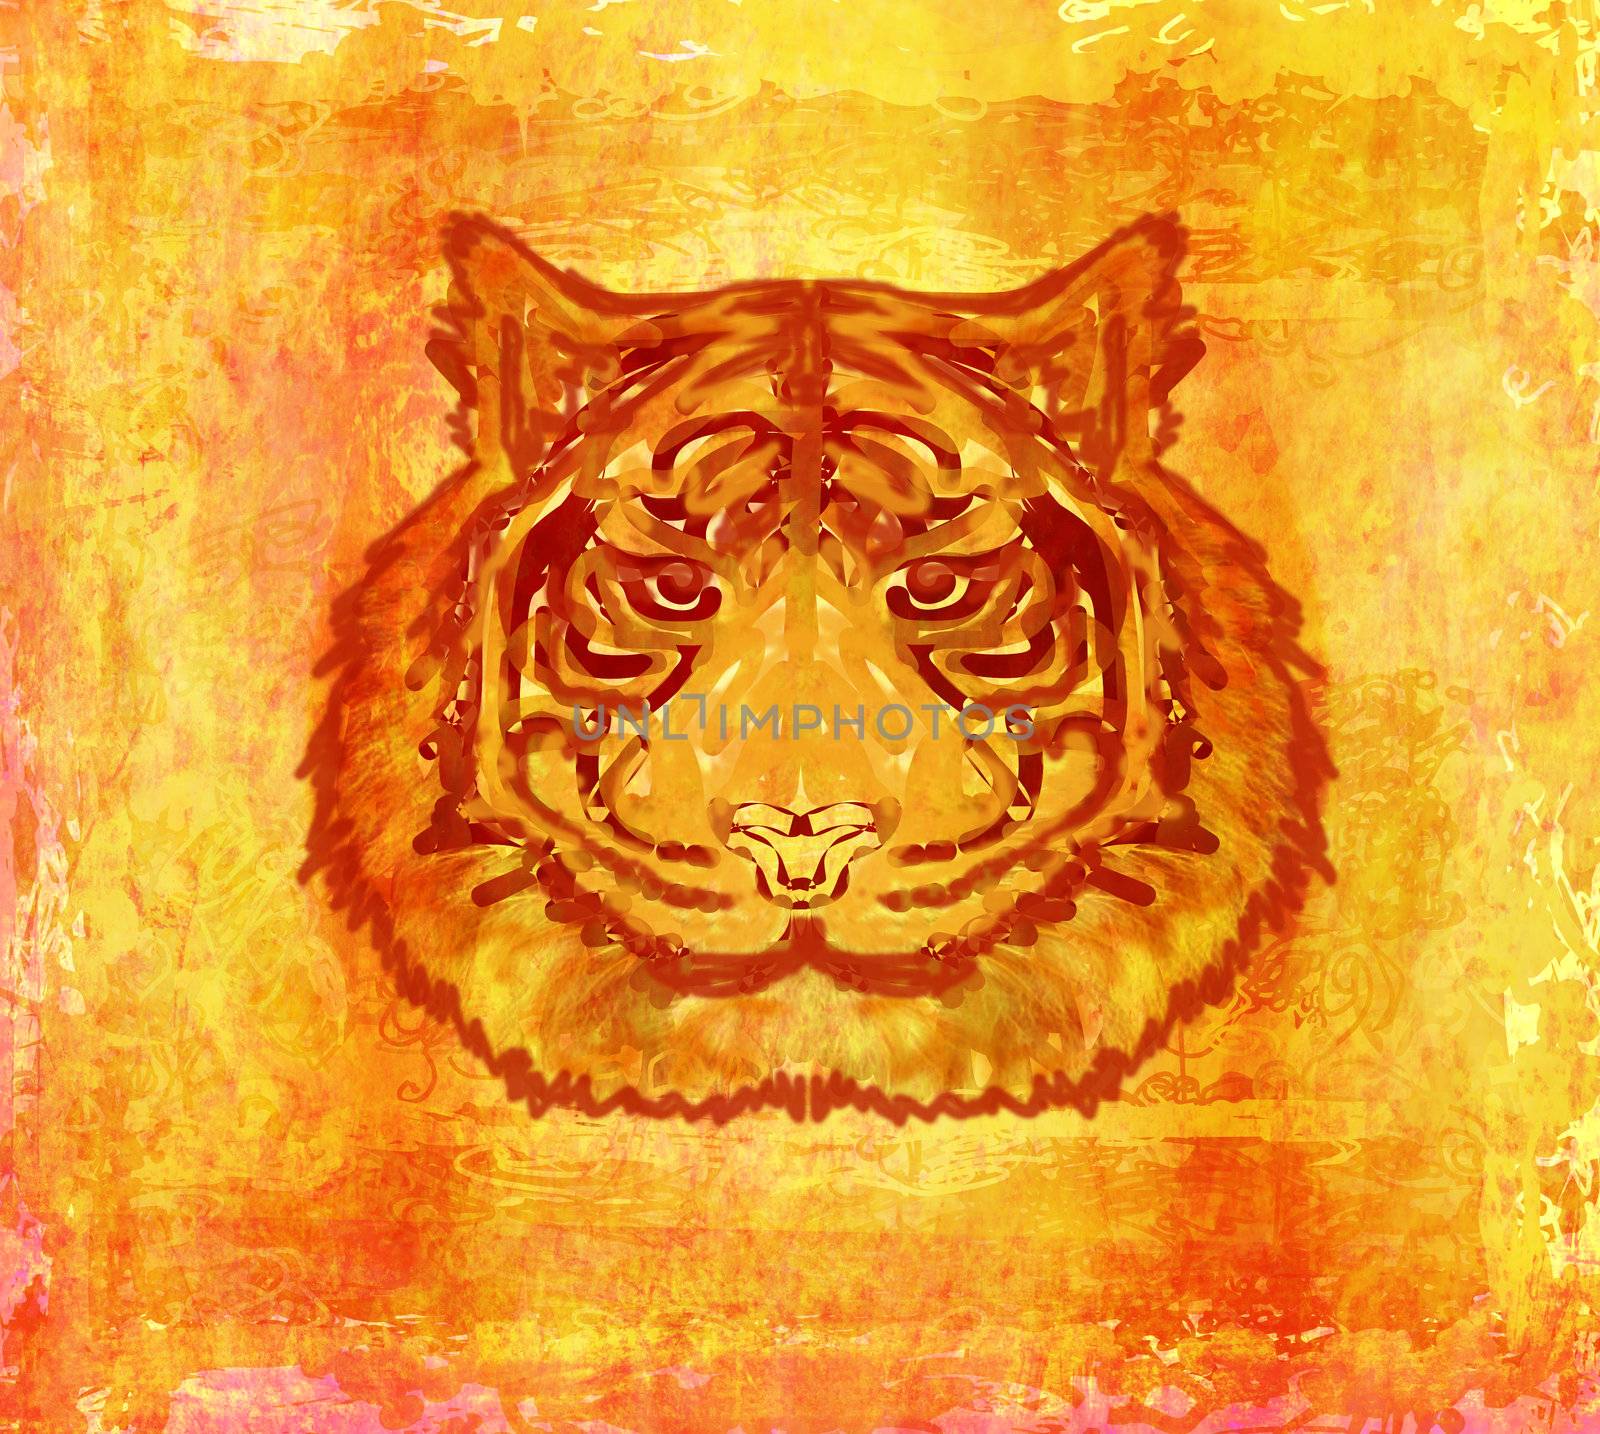 vintage paper background with tiger burnt paper